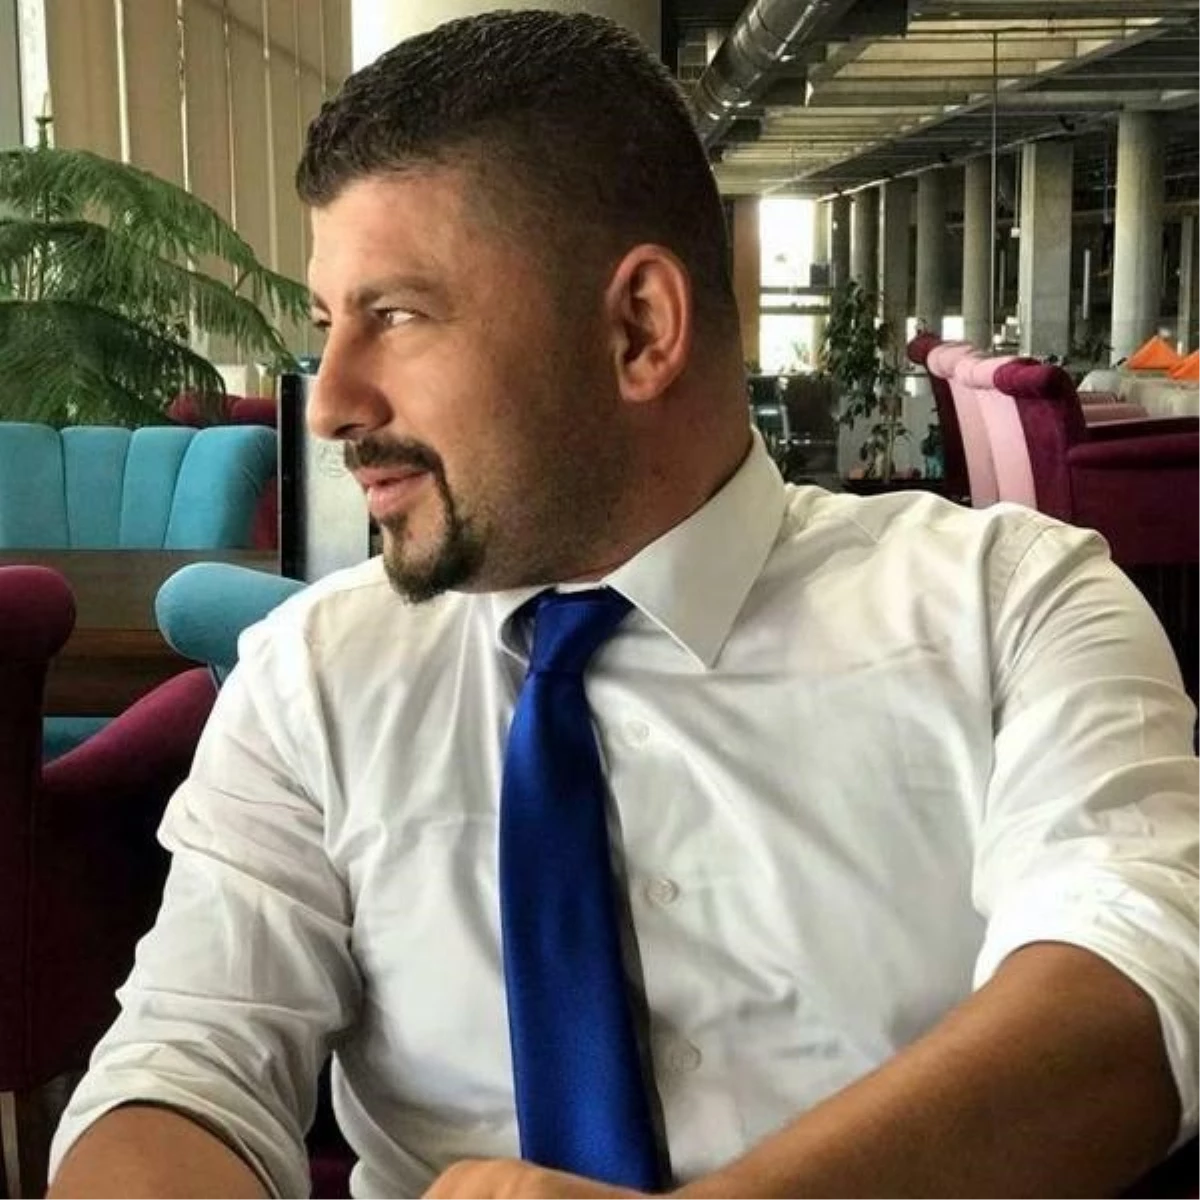 İstanbul Otoyolu\'nda Tartıştığı Avukatın Bacağını Kırdığı İddia Edilen Polis Memurunun Davası Düşürüldü